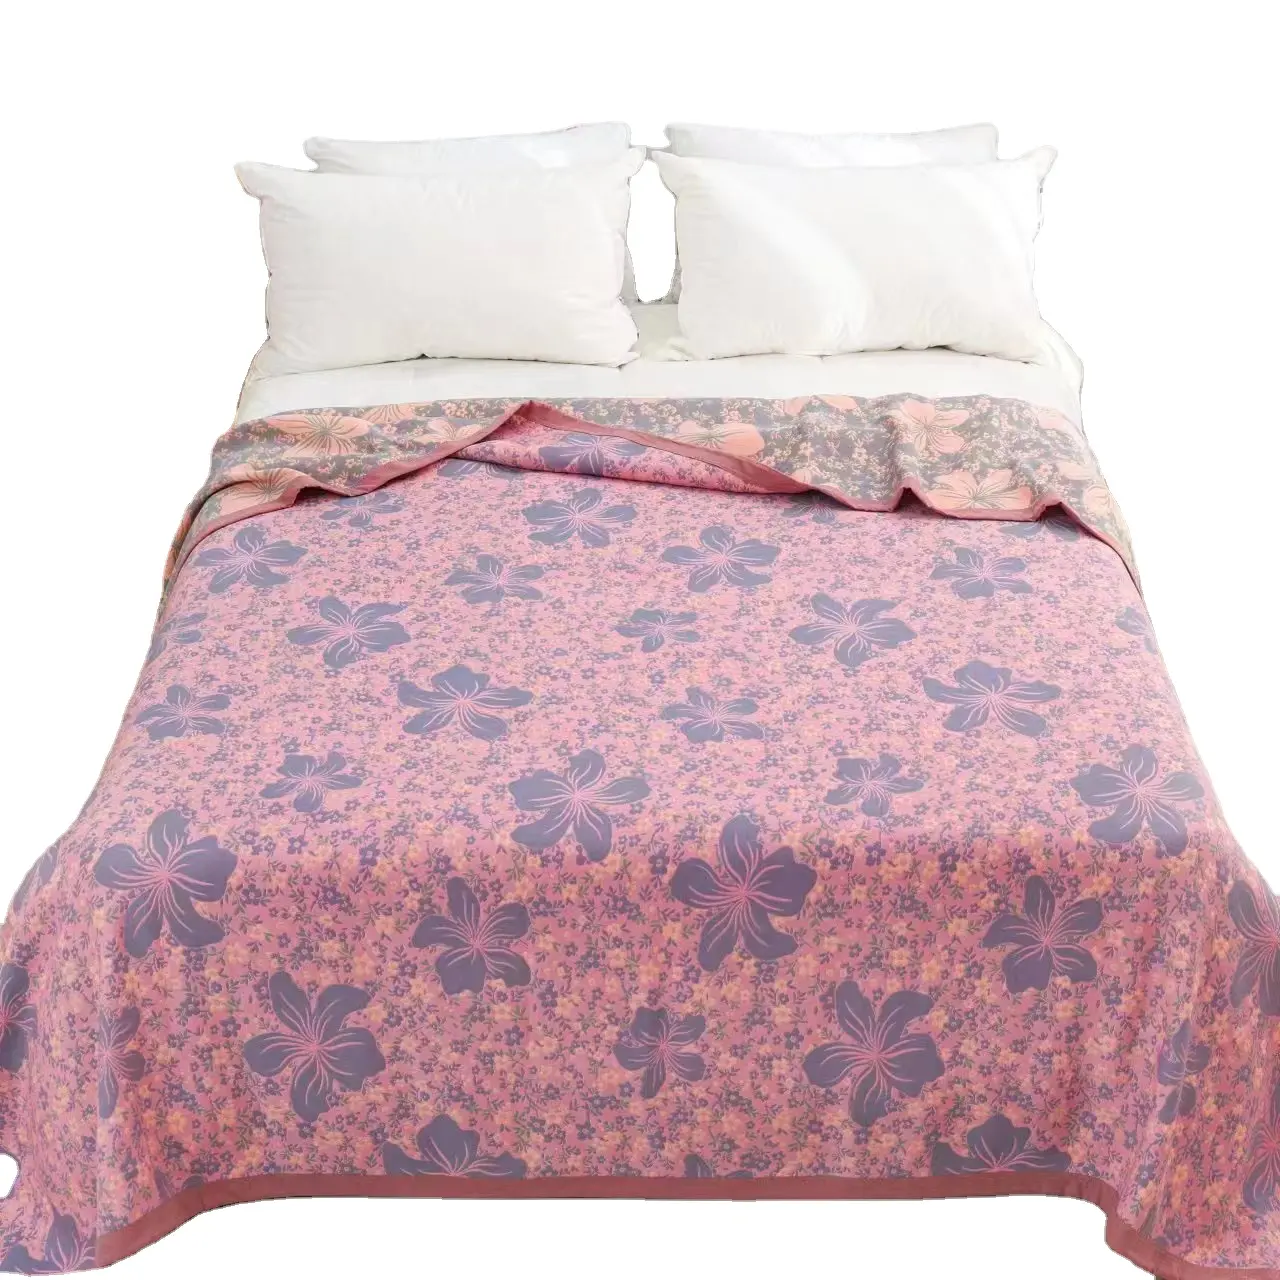 Nuovi prodotti per biancheria da letto di lusso di fascia alta coperta in fibra di soia disponibile in serie di colori chiari per tutte le stagione230 * 250cm 2.5kg